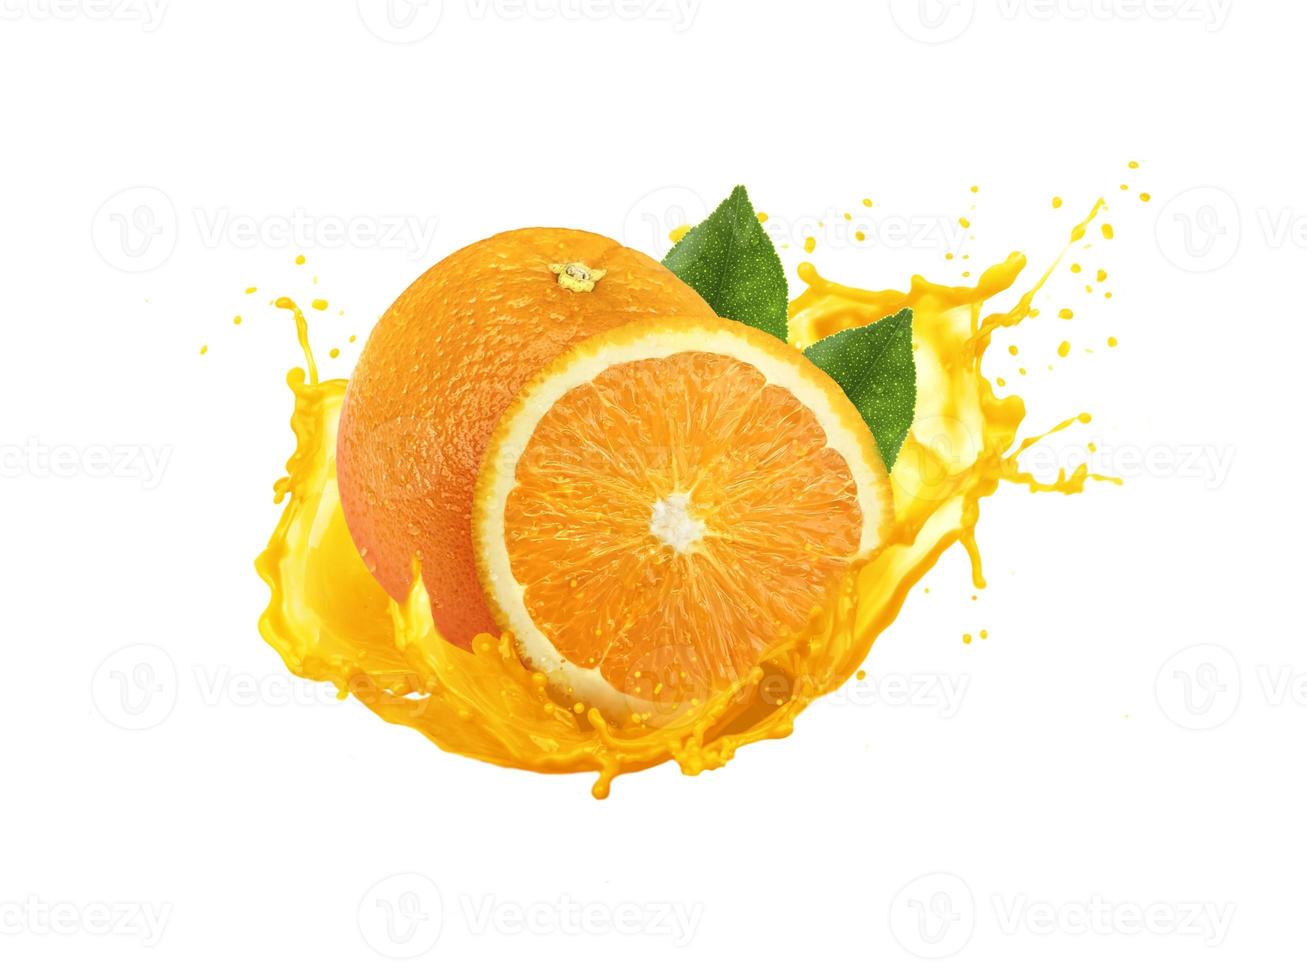 orange avec splash isolé sur fond blanc, retouche photo de jus d'orange